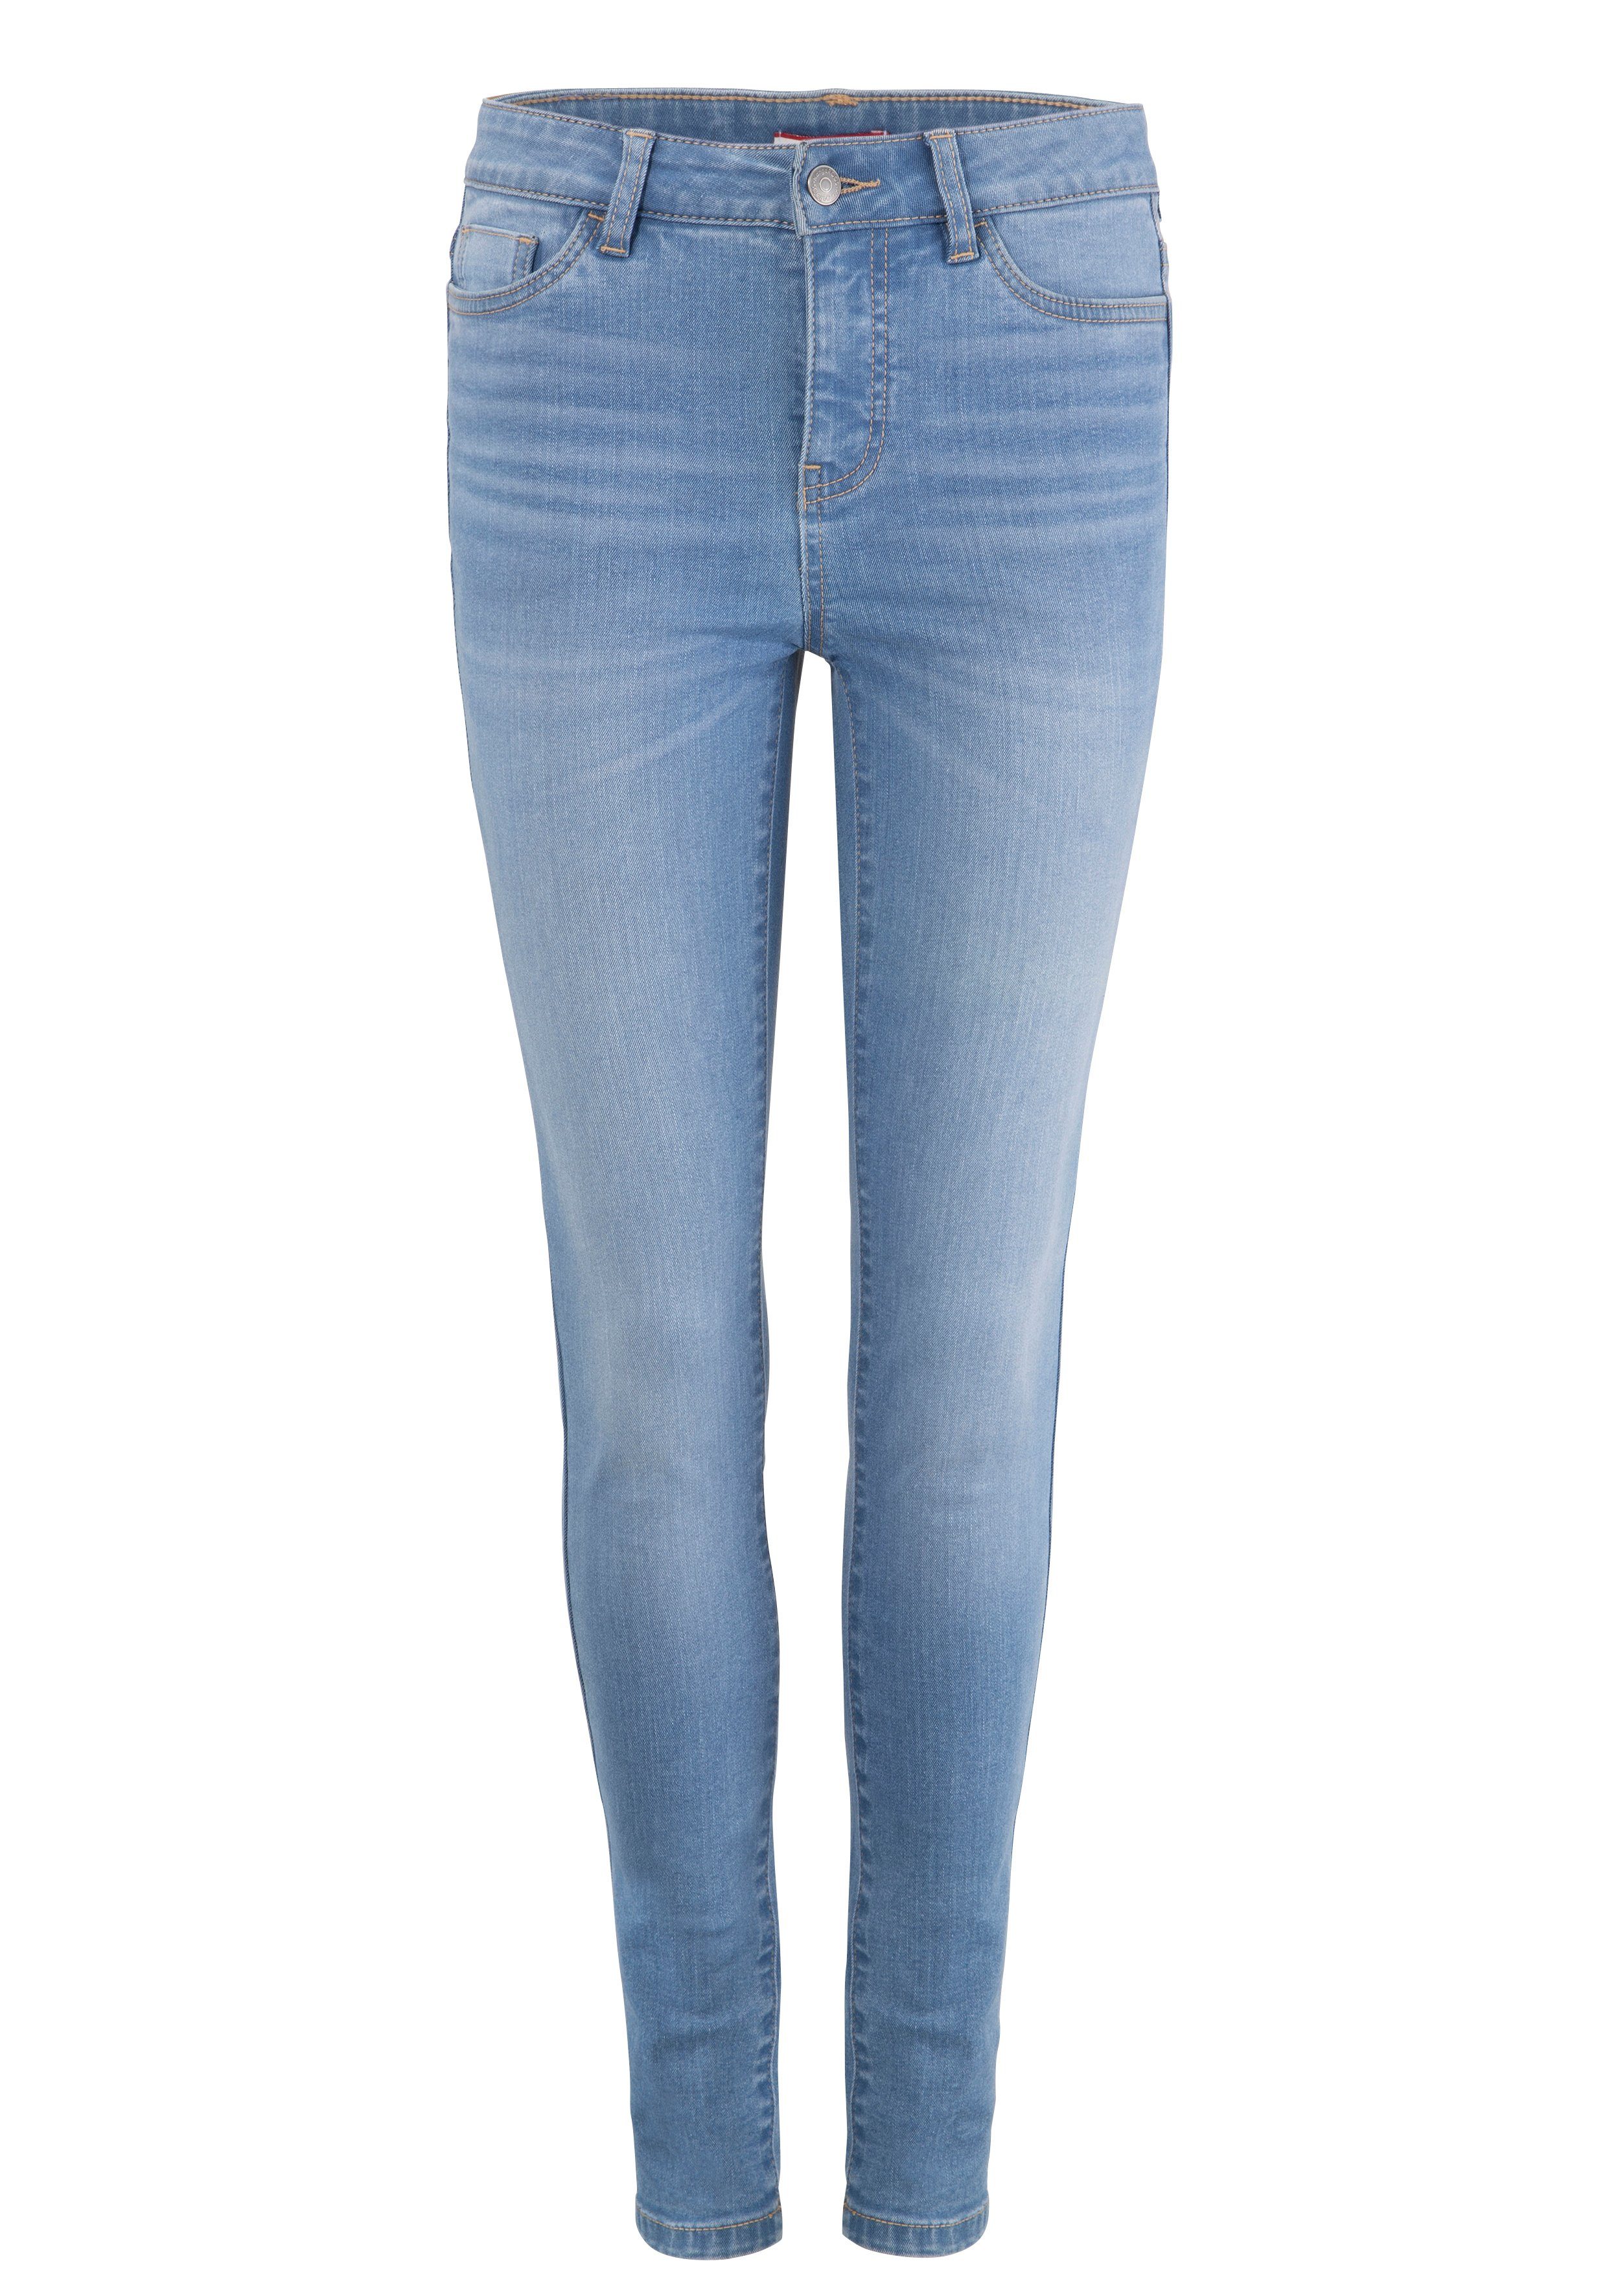 HIGH SUPER KangaROOS mit 5-Pocket-Jeans SKINNY used-Effekt light-blue-used RISE